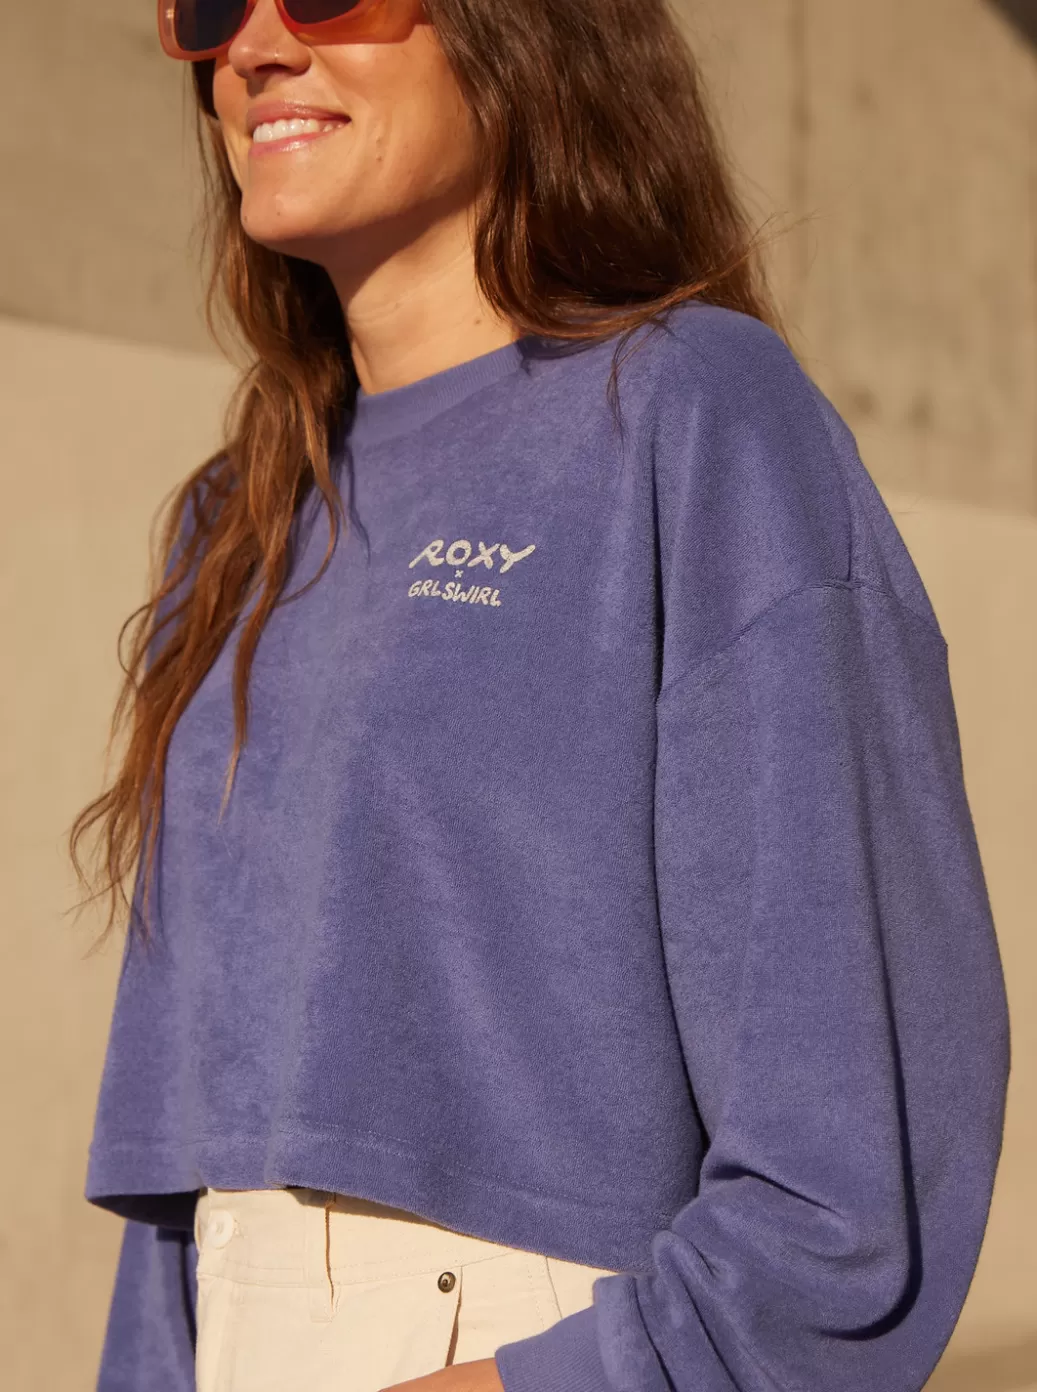 Loungewear | Sweaters | Fleece & Hoodies | WOMEN ROXY x Grl Swirl Cropped Sweatshirt Marlin